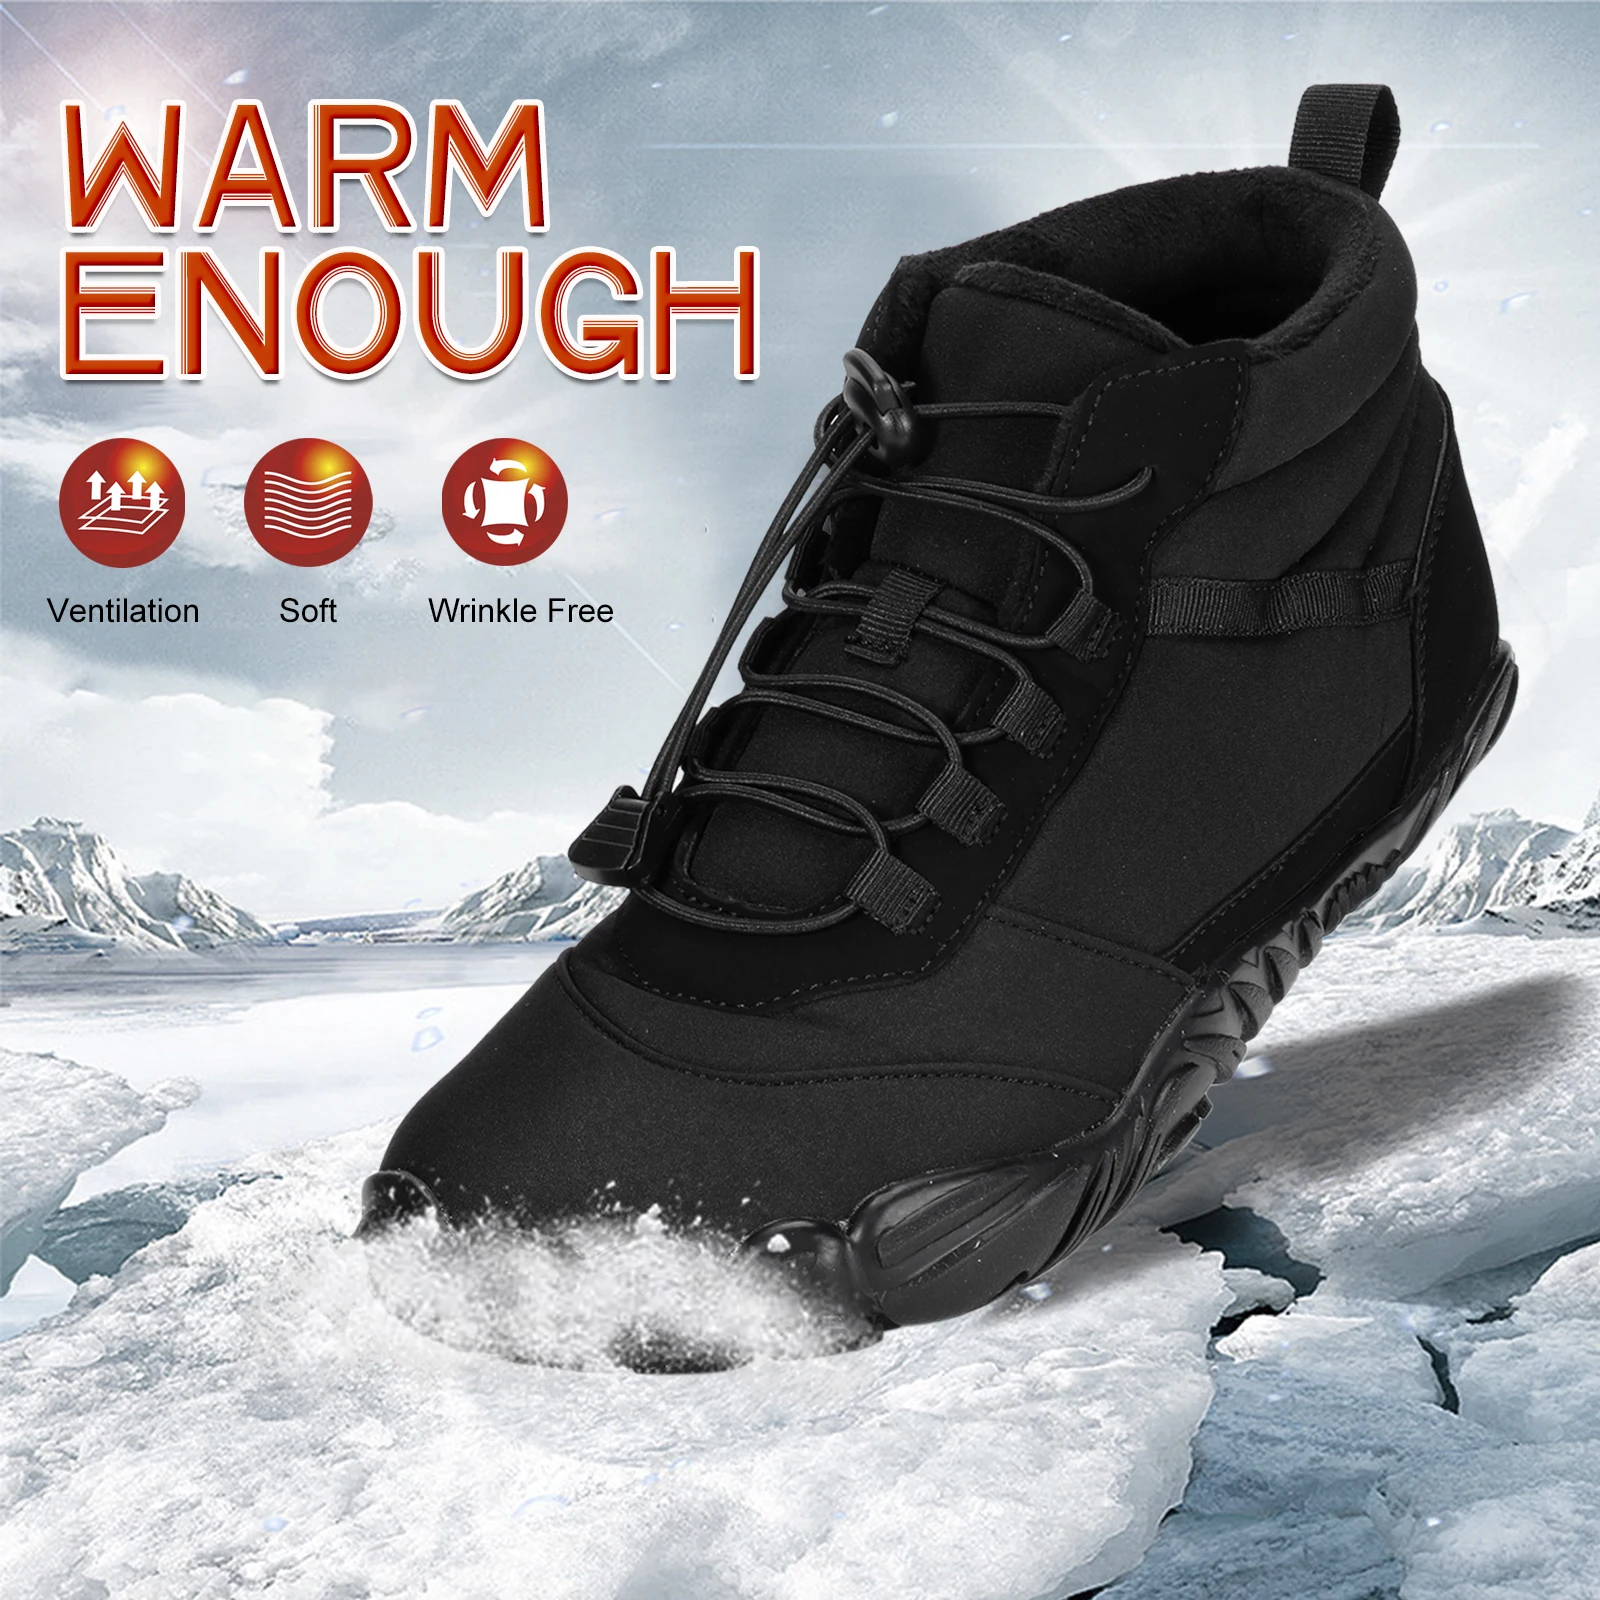 Kış Sıcak Koşu Sneakers Kadın Erkek Kauçuk Koşu Yalınayak Ayakkabı Su Geçirmez Kaymaz Nefes Trekking Tırmanma için - 1